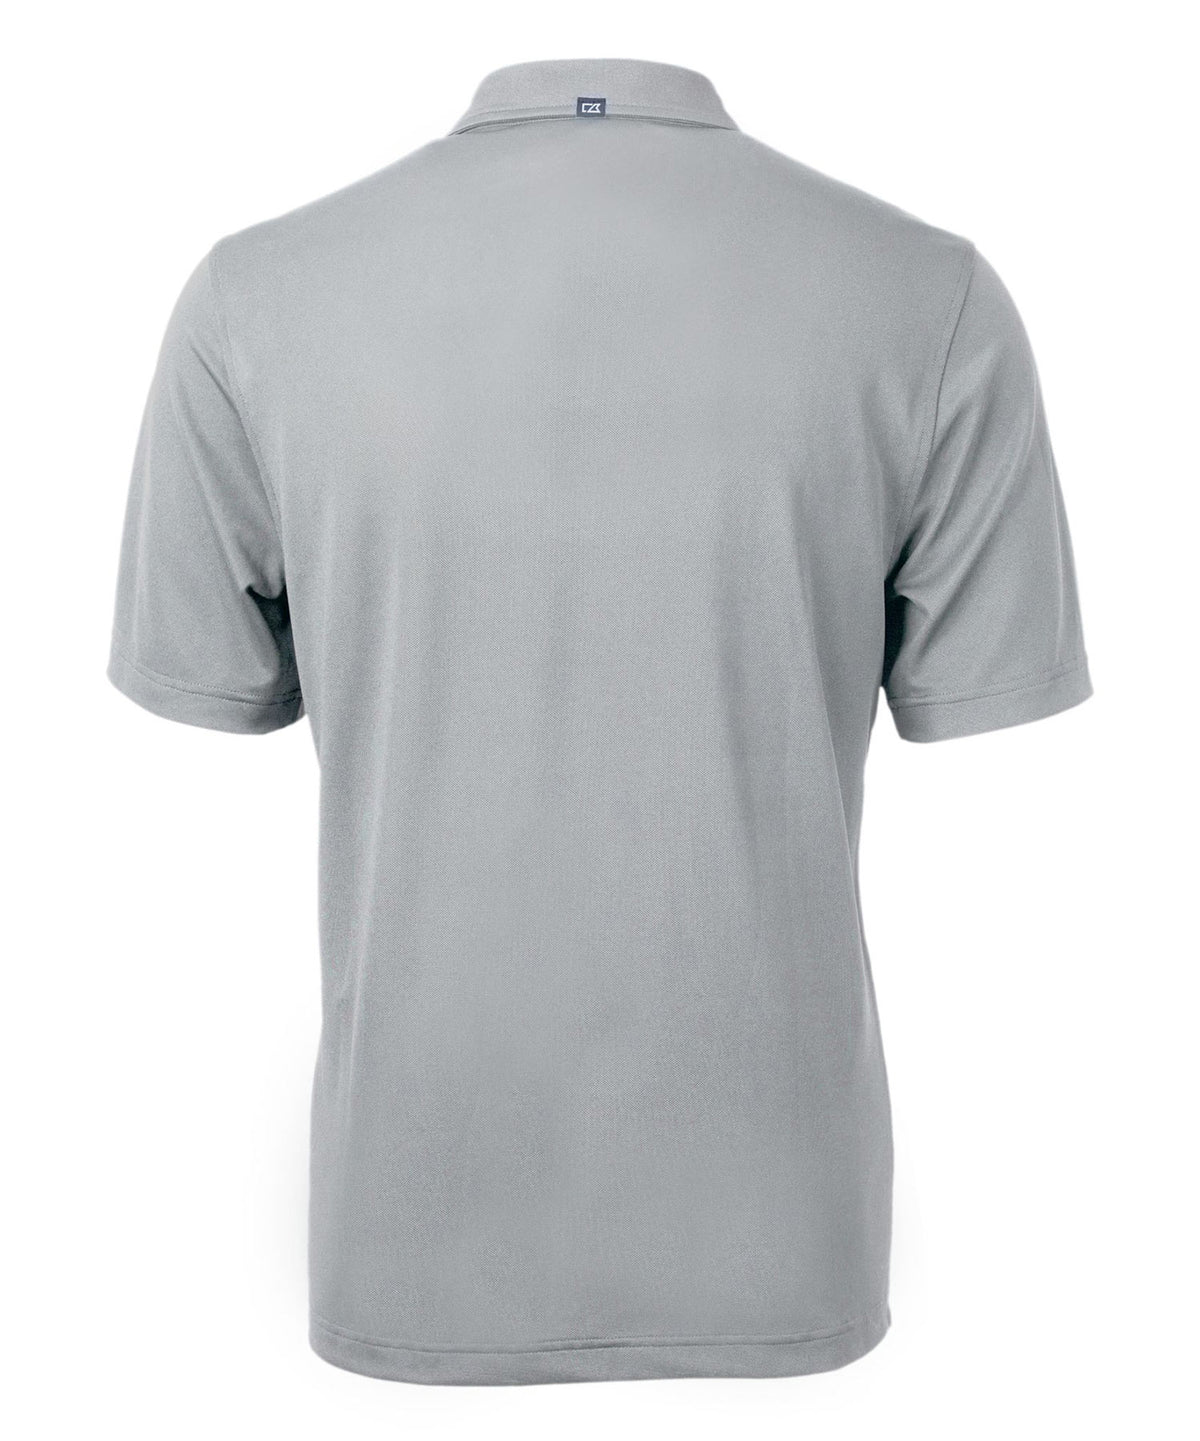 Cutter & Buck Buffalo Bills Short Sleeve Polo Knit Shirt, Men's Big & Tall